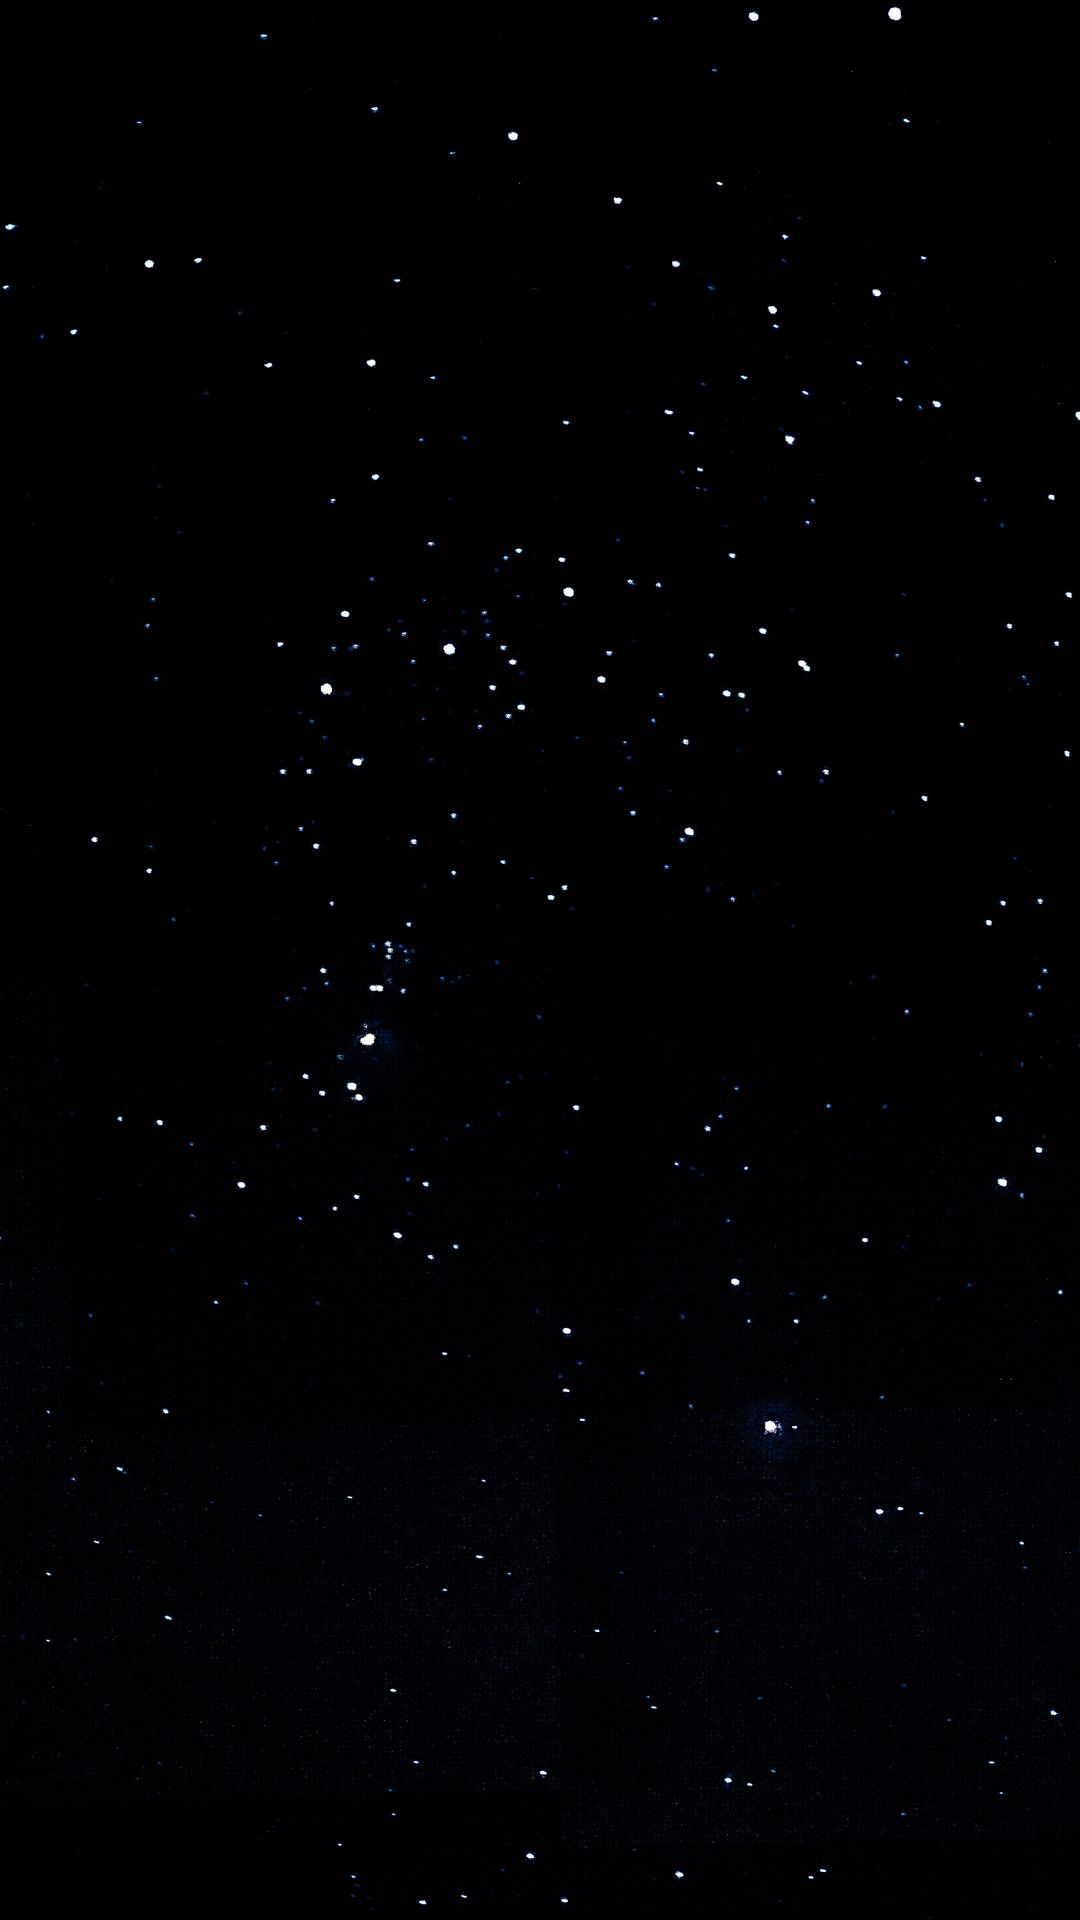 Hình nền đêm sao đen 1080x1920: Hình nền đêm sao đen 1080x1920 sẽ giúp bạn tận hưởng cảm giác bình yên và thư giãn trên thiết bị của mình. Những hình ảnh đẹp mắt của bầu trời đêm đầy sao sẽ mang đến cho bạn một giao diện tuyệt đẹp và đầy trải nghiệm hấp dẫn.